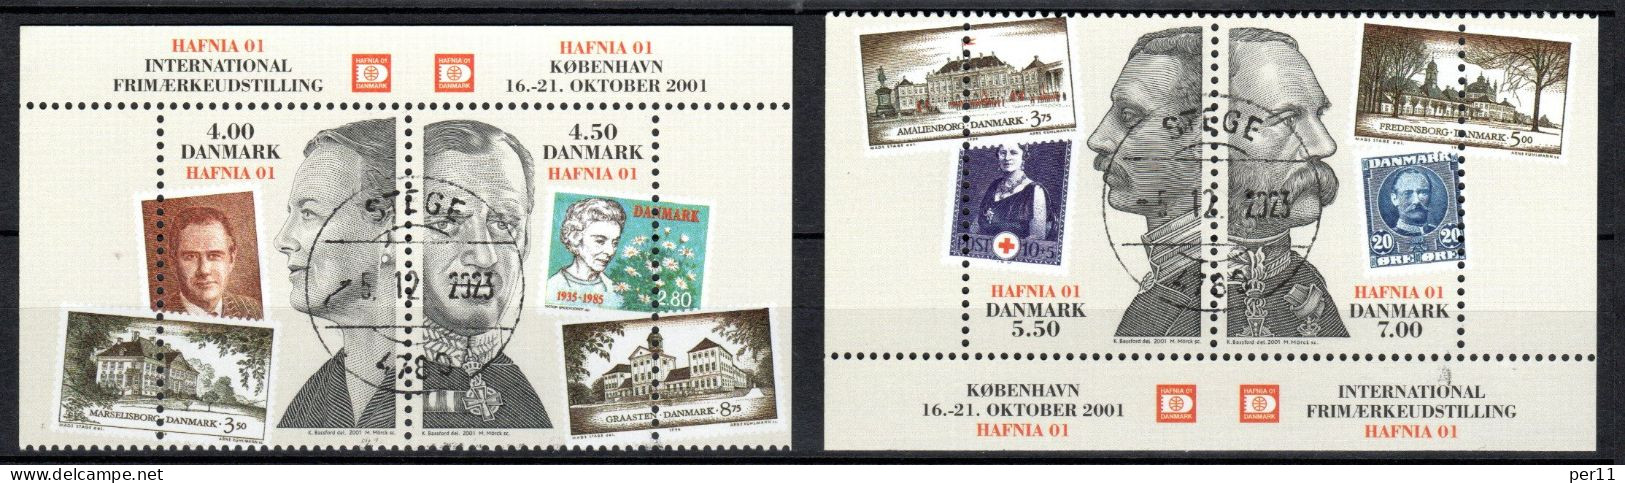 2001 Hafnia01 Stamp Excibition  (bl10) - Usati